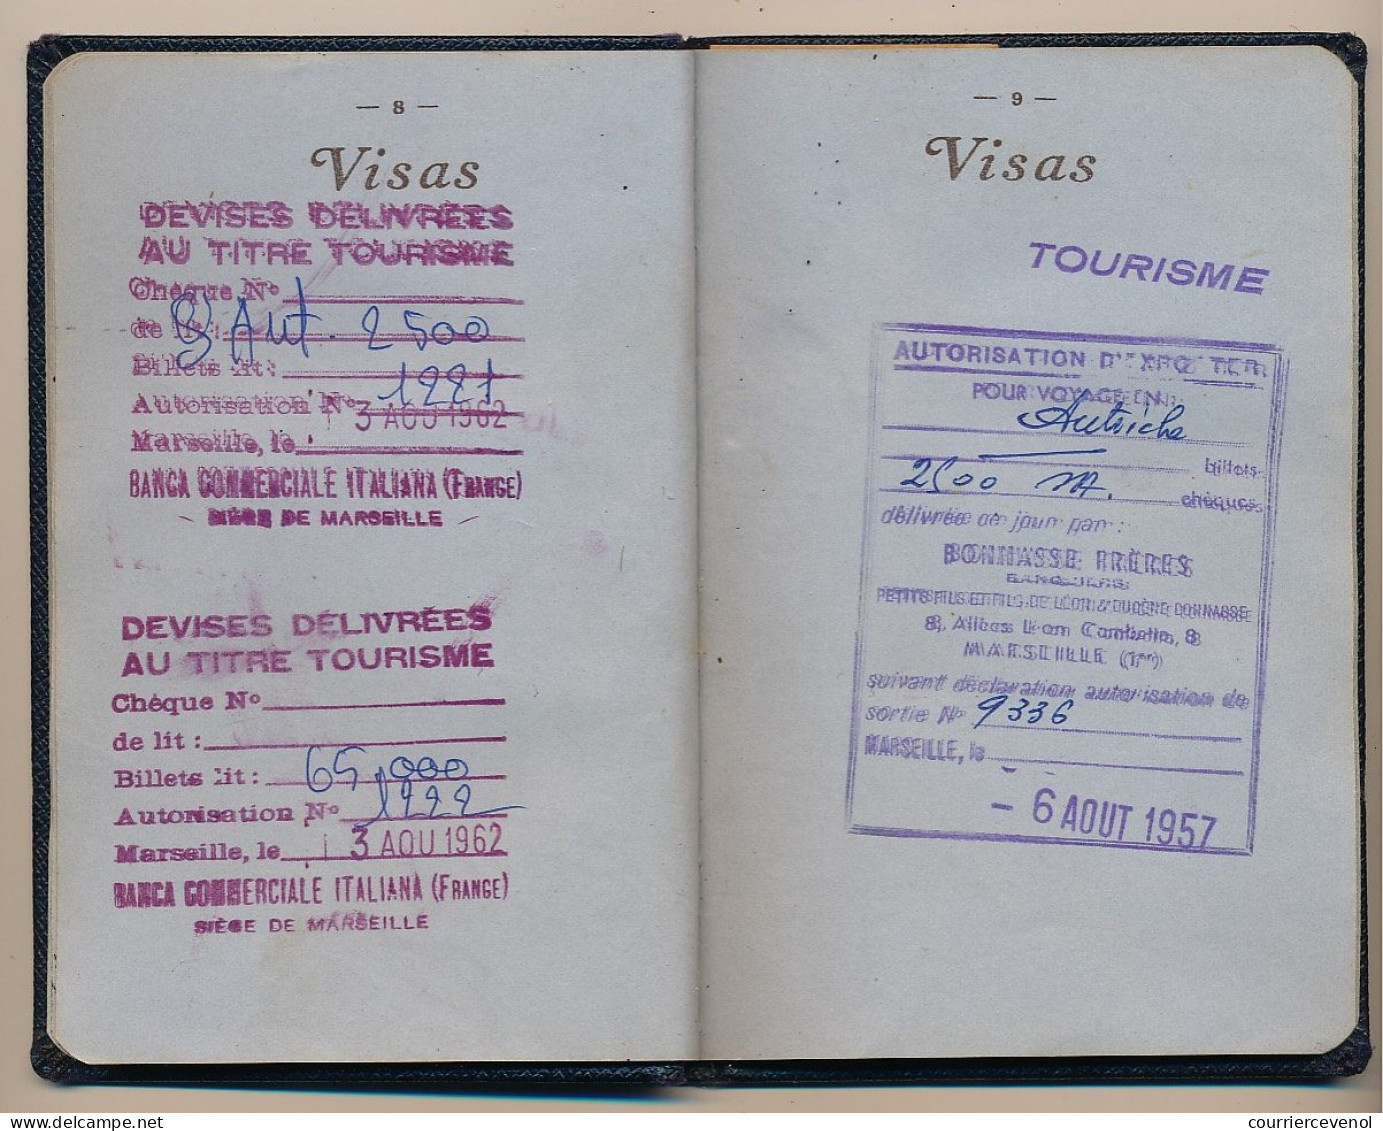 FRANCE - Passeport délivré à Marseille (B. du R.) - 1959/1965 - Fiscaux type Daussy 2000F, 300F,100F + 32,00NF + Visas